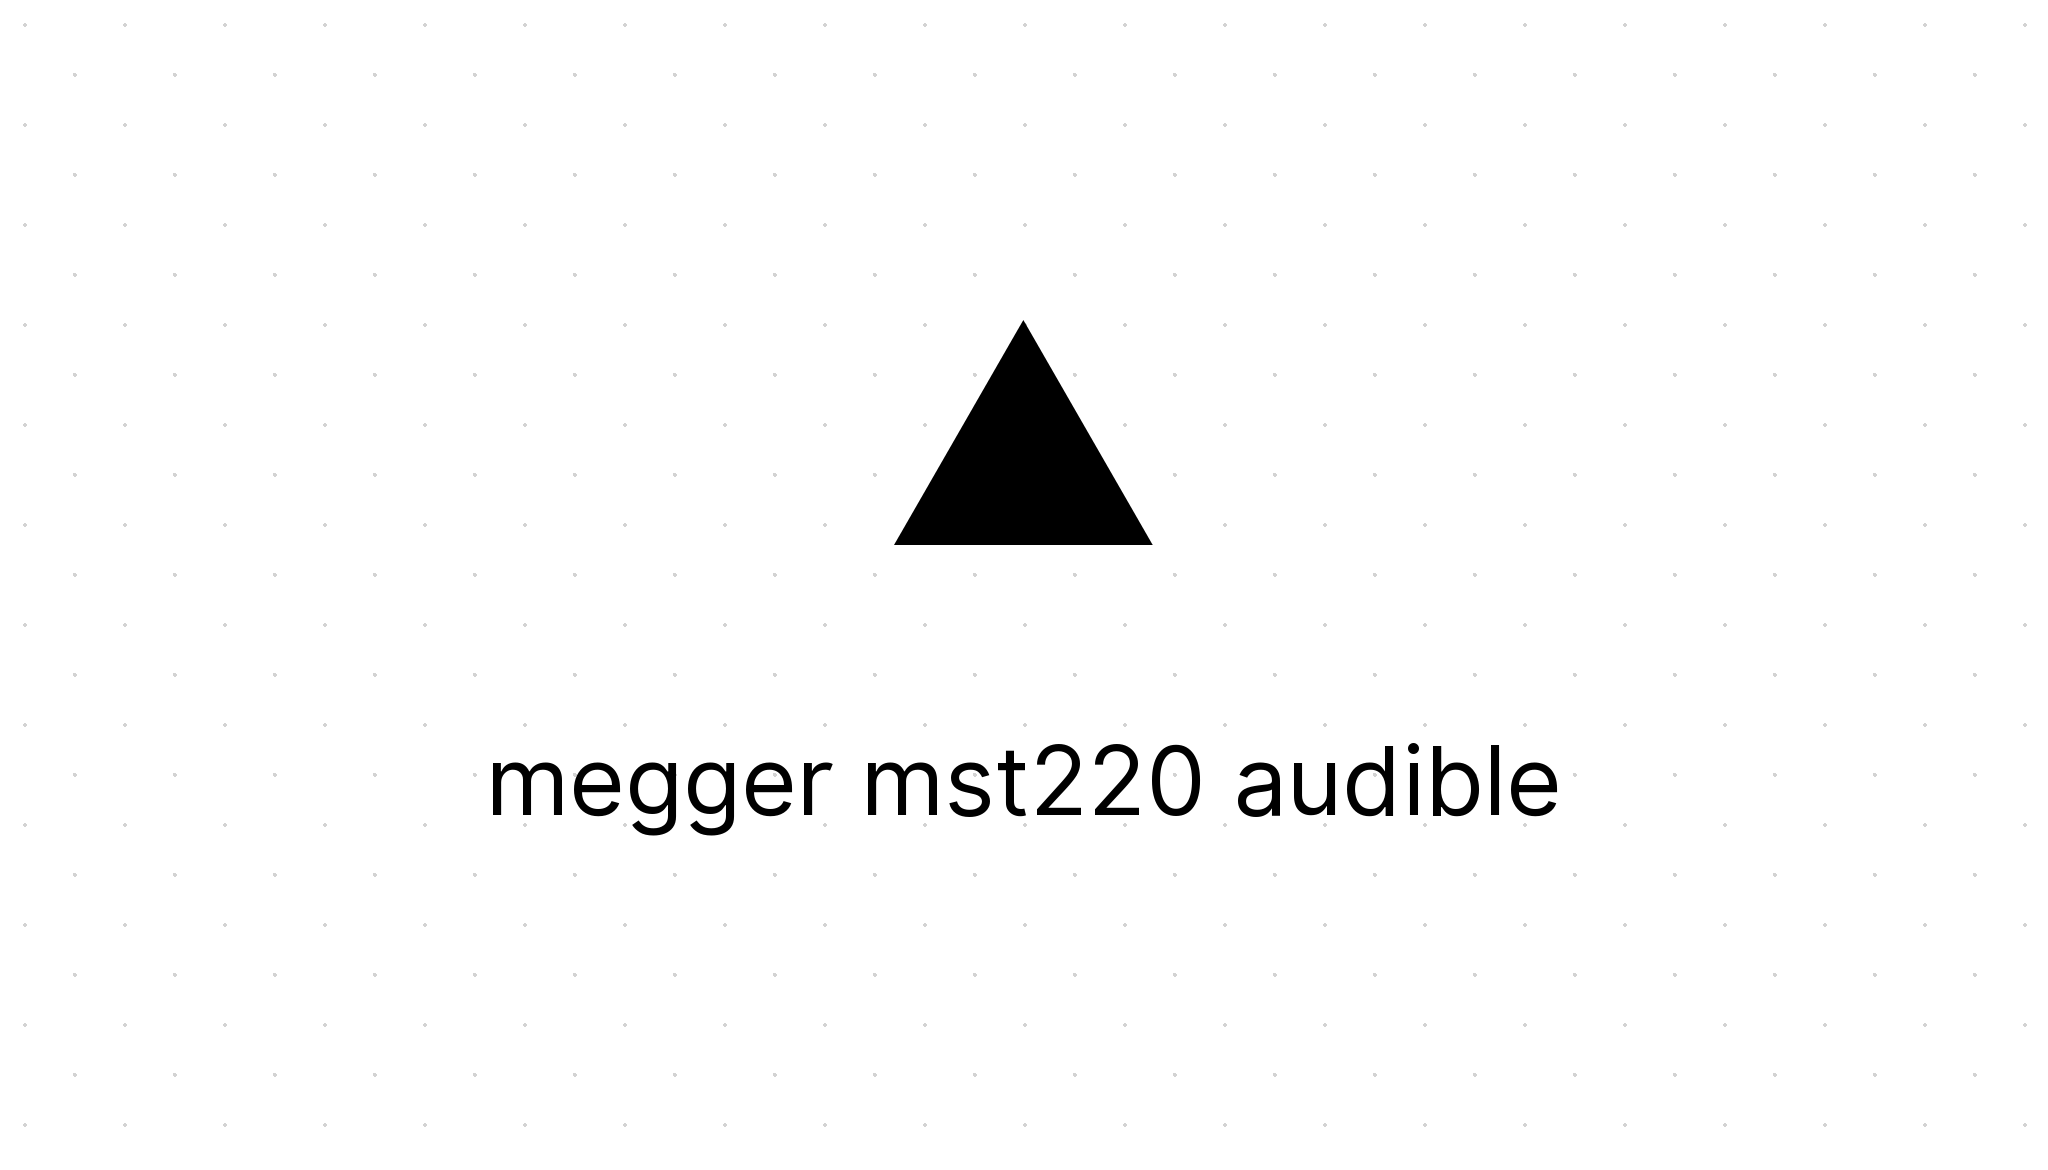 Megger MST220 audible Socket Tester